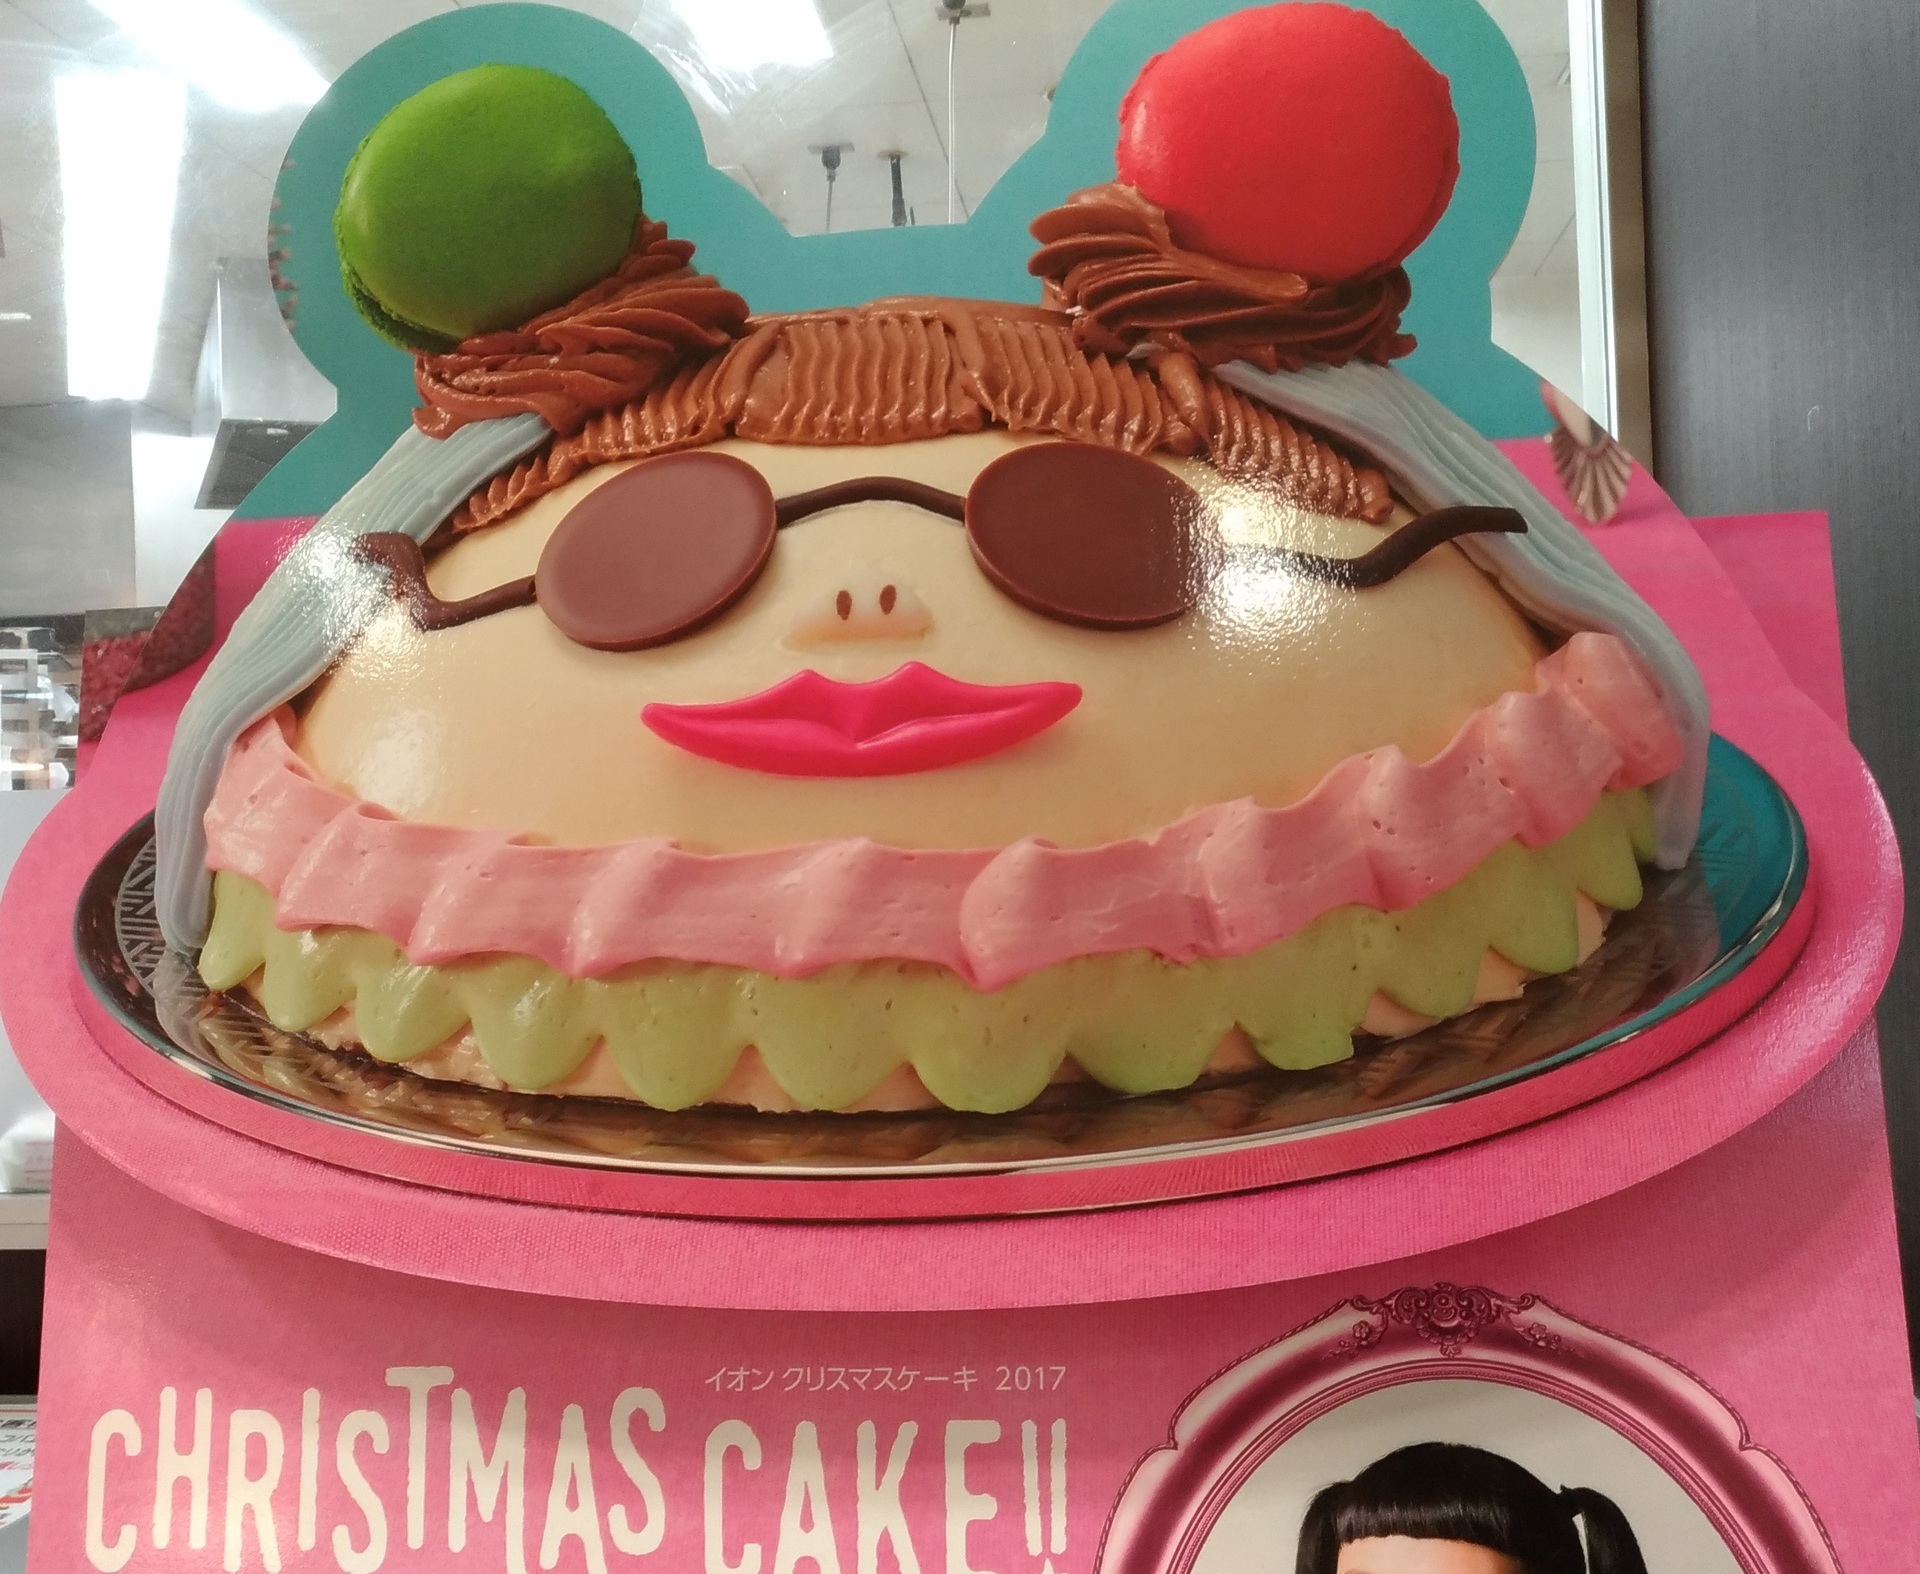 渡辺直美ケーキ イオンで17年クリスマスケーキに 妖怪ウォッチ Zenfone 2 Laserカメラ スマホで写真 スクリーンショットブログ